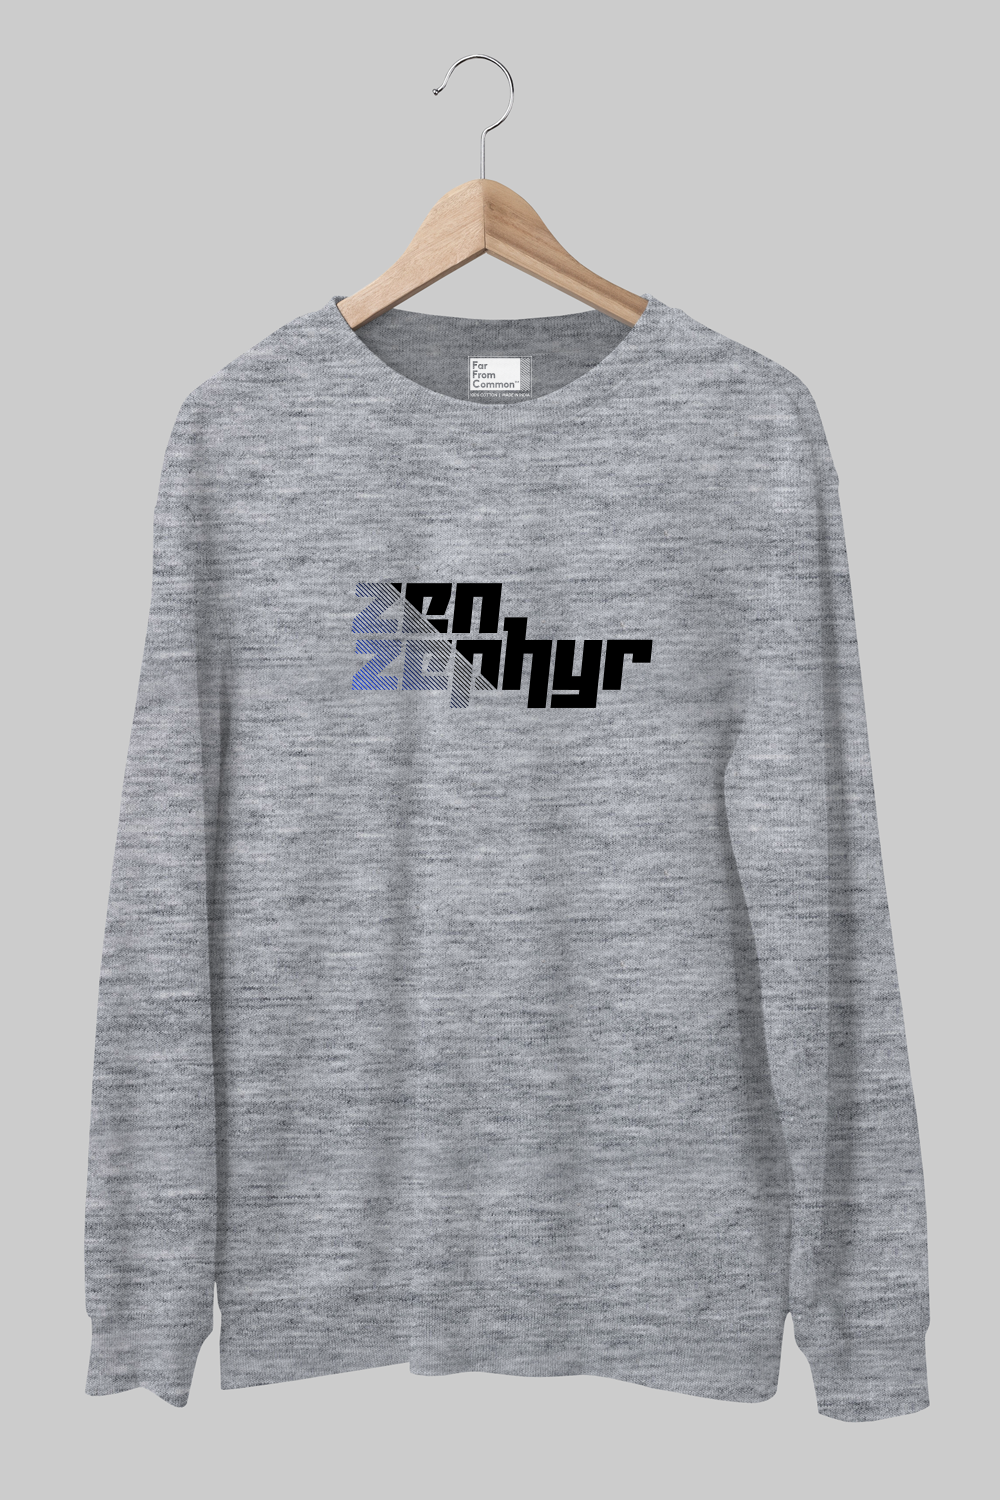 Zen Zephyr Melange Grey Sweatshirt